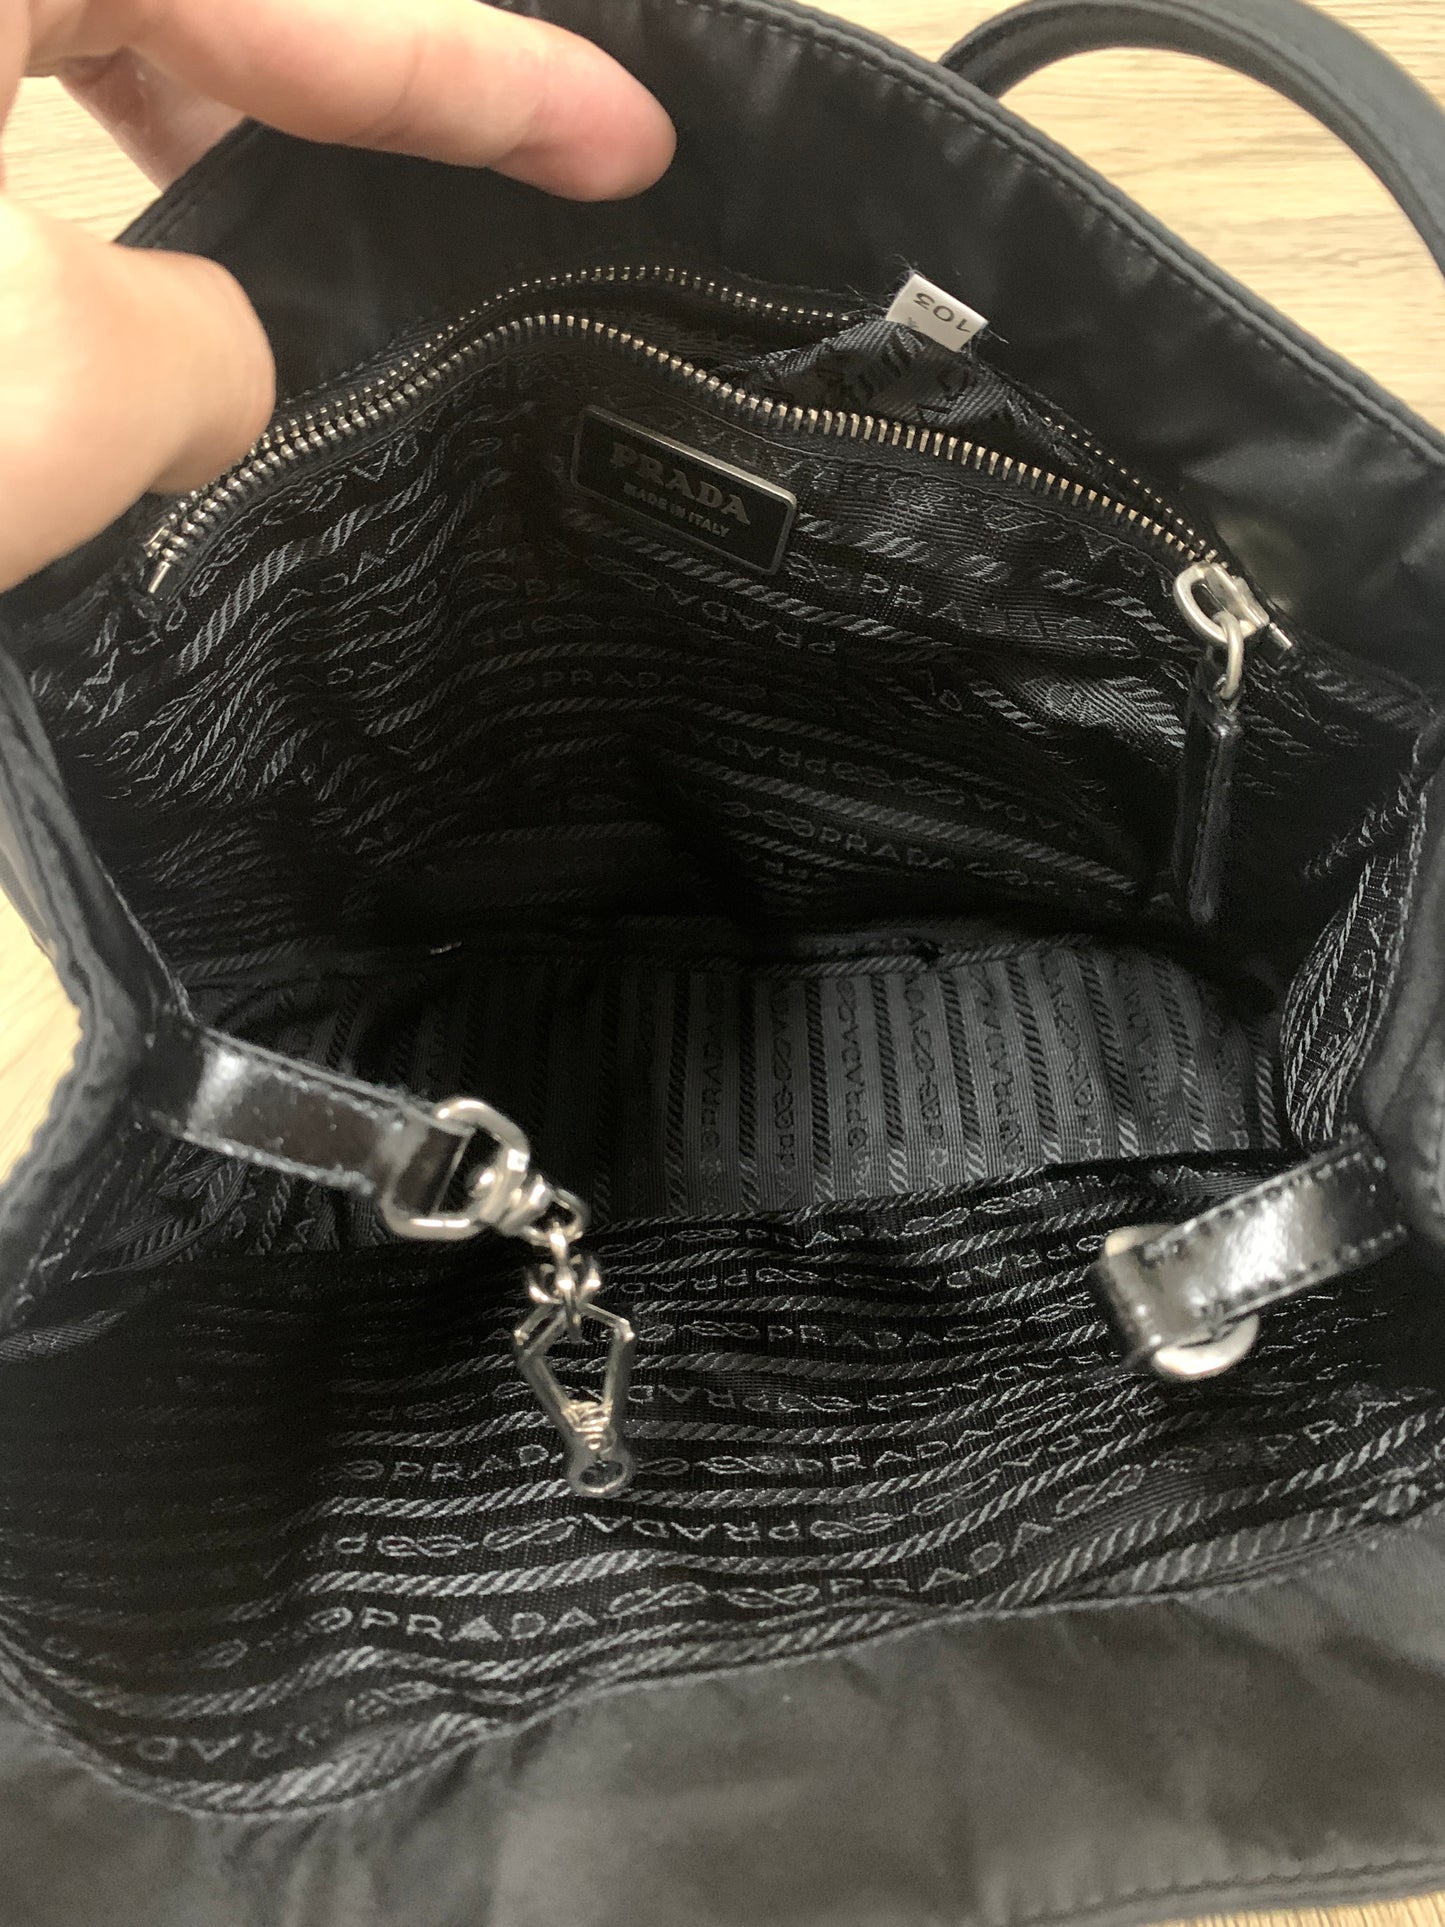 Prada bag black tote handbag coins bag - 16AUG22